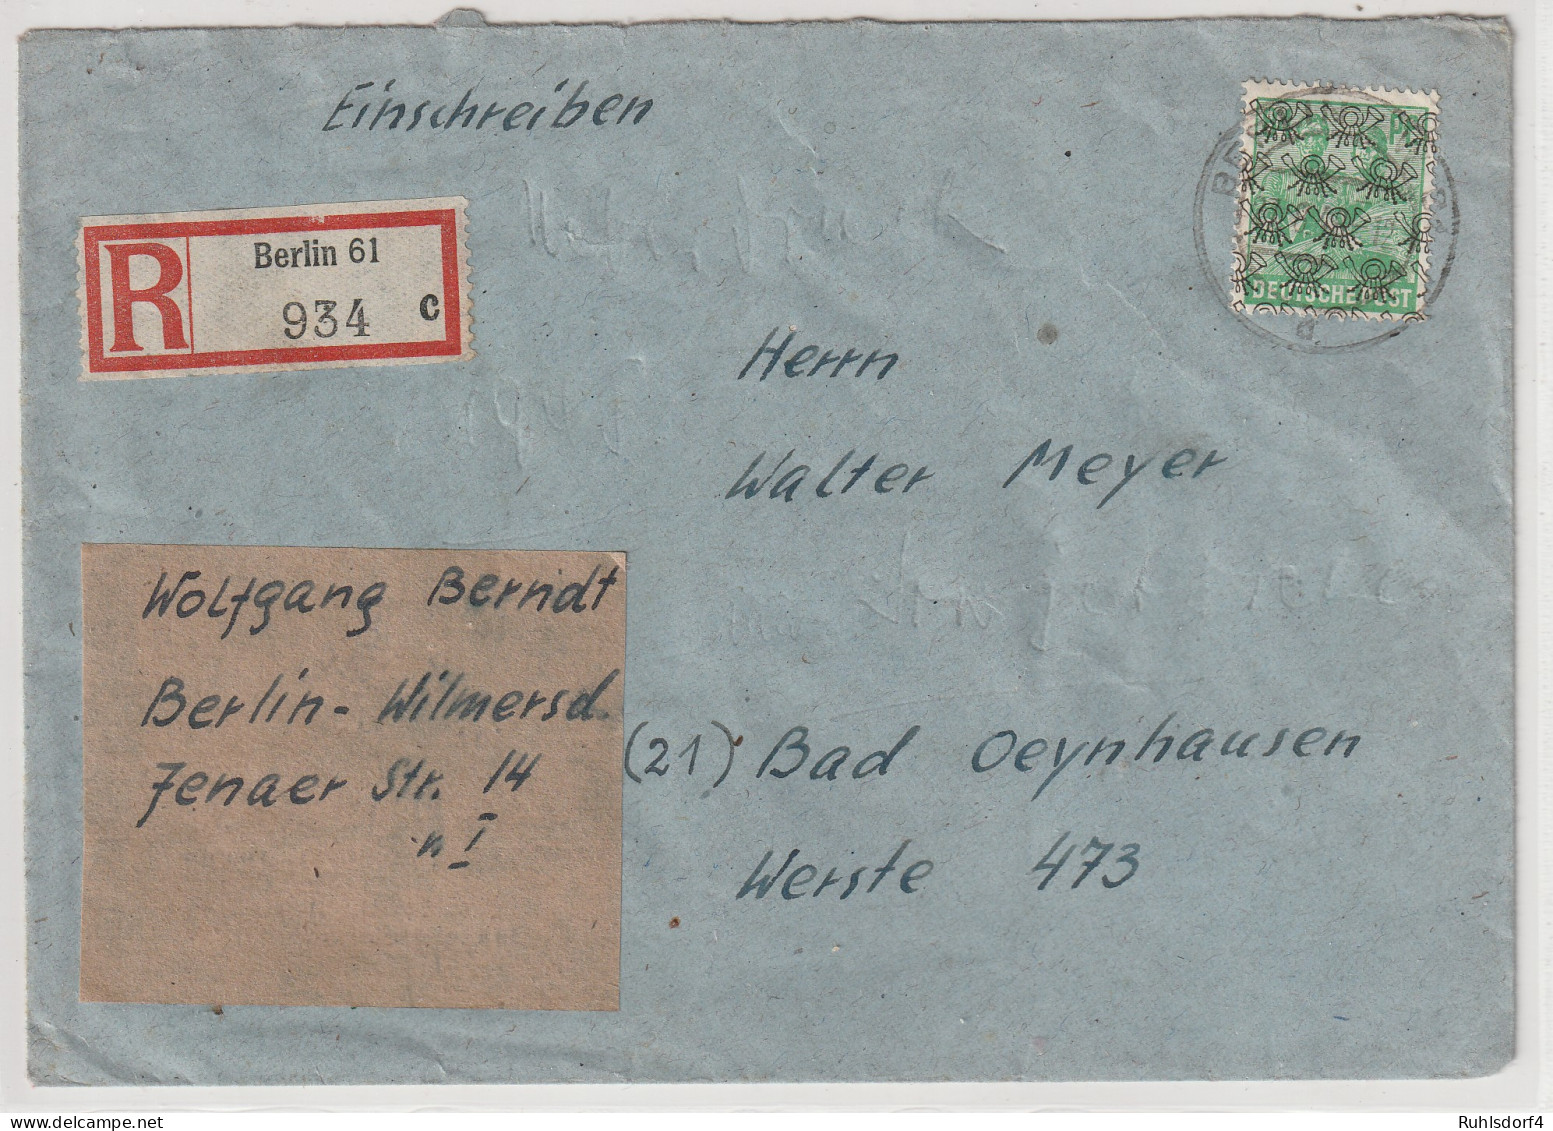 Berlin: 84 Pfg. Posthorn Netz Auf R-Fern-Brief In WBerlin Verwendet, Gepr. - Lettres & Documents